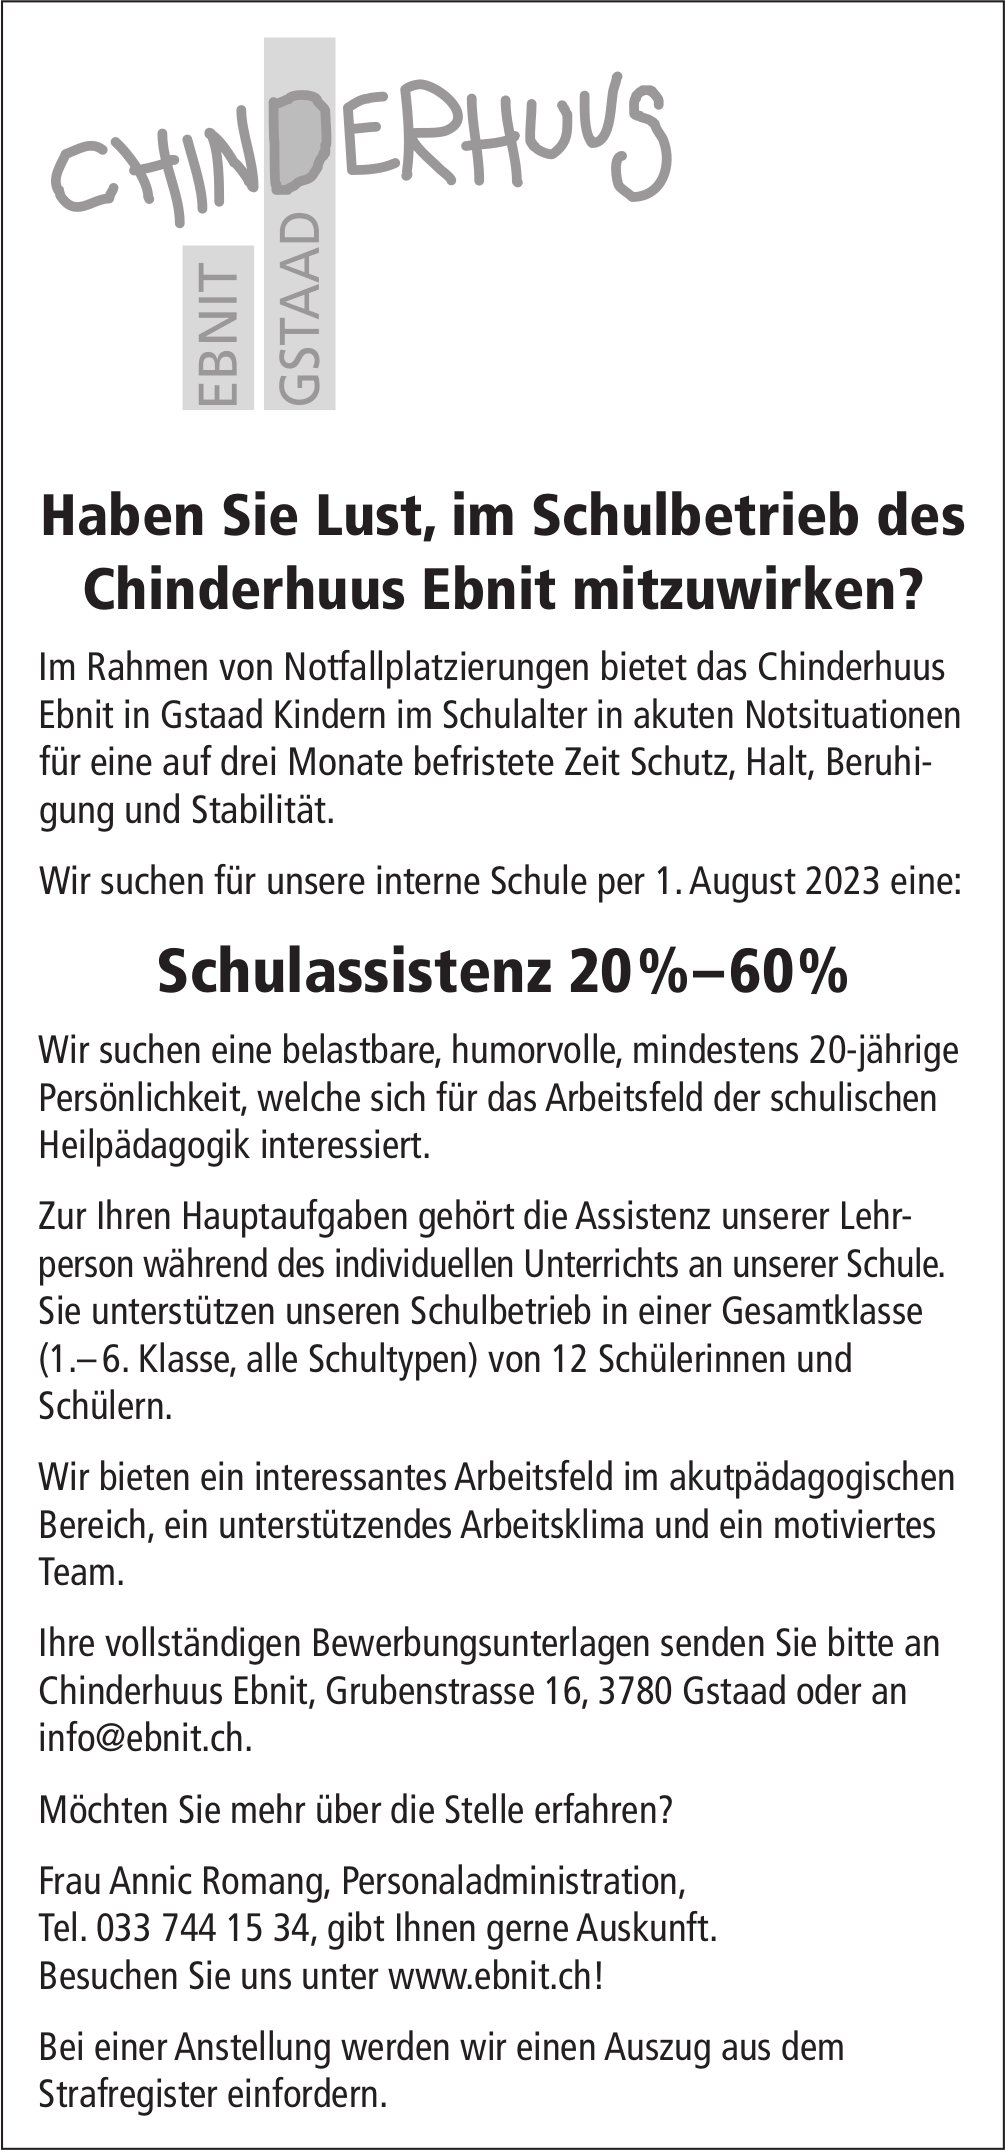 Schulassistenz 20%–60%, Chinderhuus Ebnit, Gstaad, gesucht